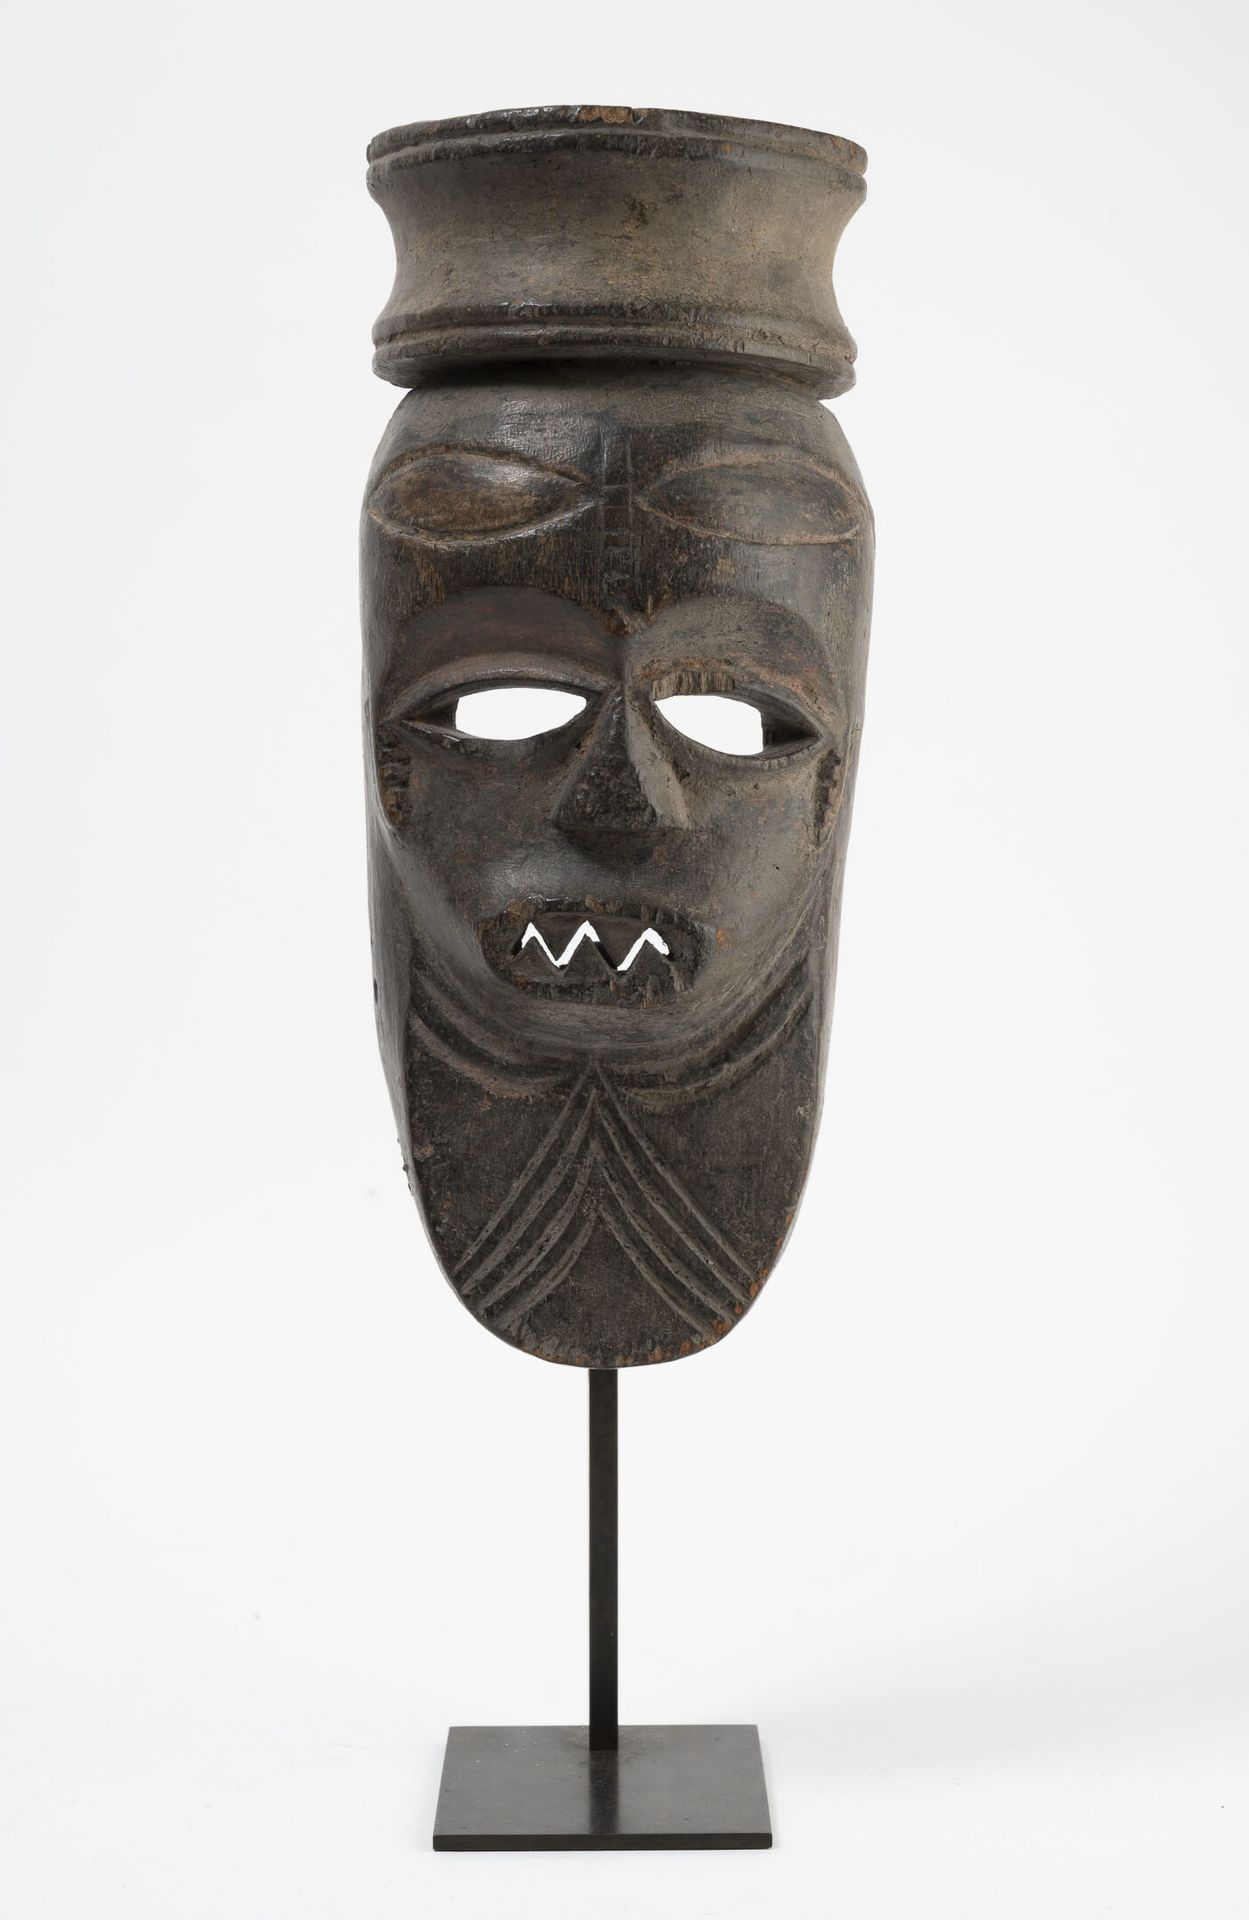 CÔTE D'IVOIRE Maschera in legno intagliato e patinato.

Base.

H. 31 cm.

Altezz&hellip;